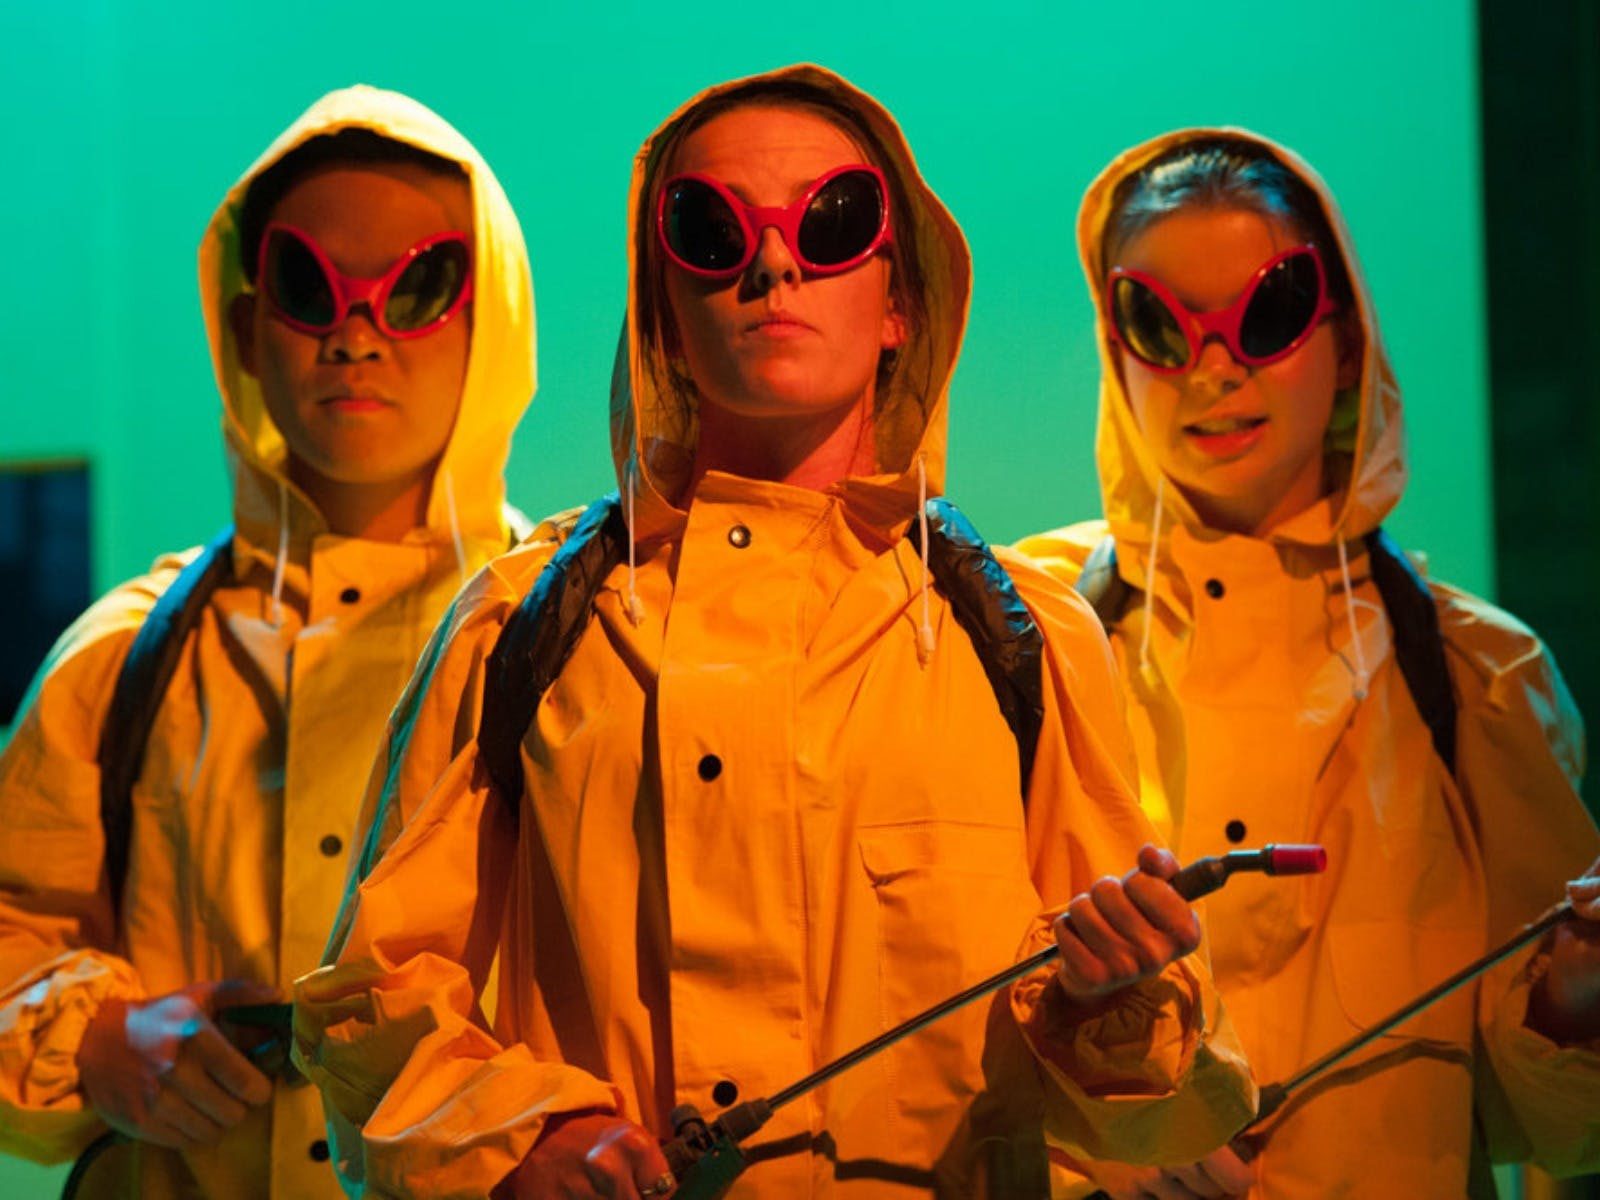 Actors in yellow raincoats, holding pesticide bottles. Looking menacing.